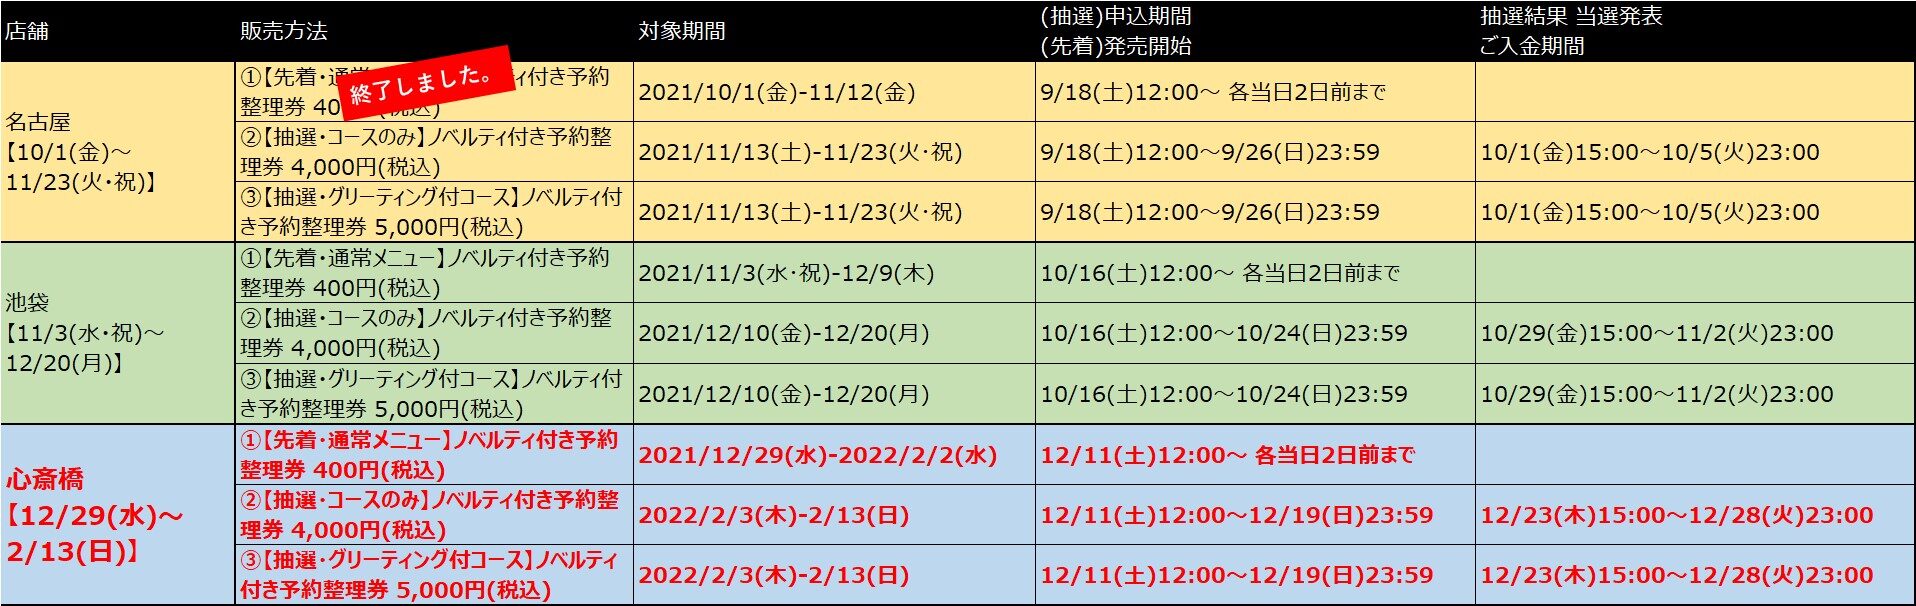 usamaru LT schedule